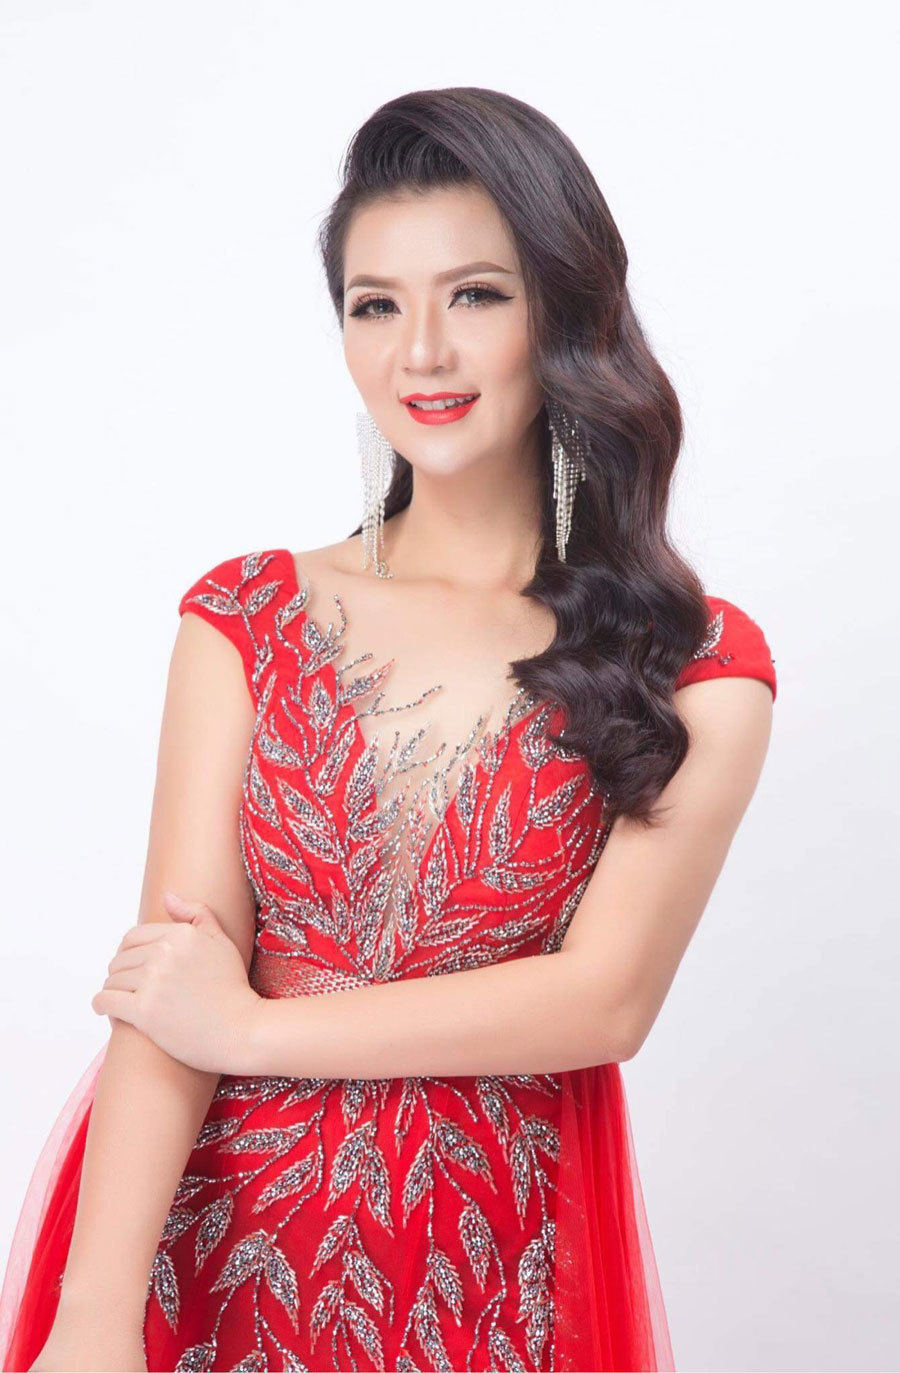 Ca sĩ Triệu Trang được công nhận Kỷ lục Guinness Việt Nam